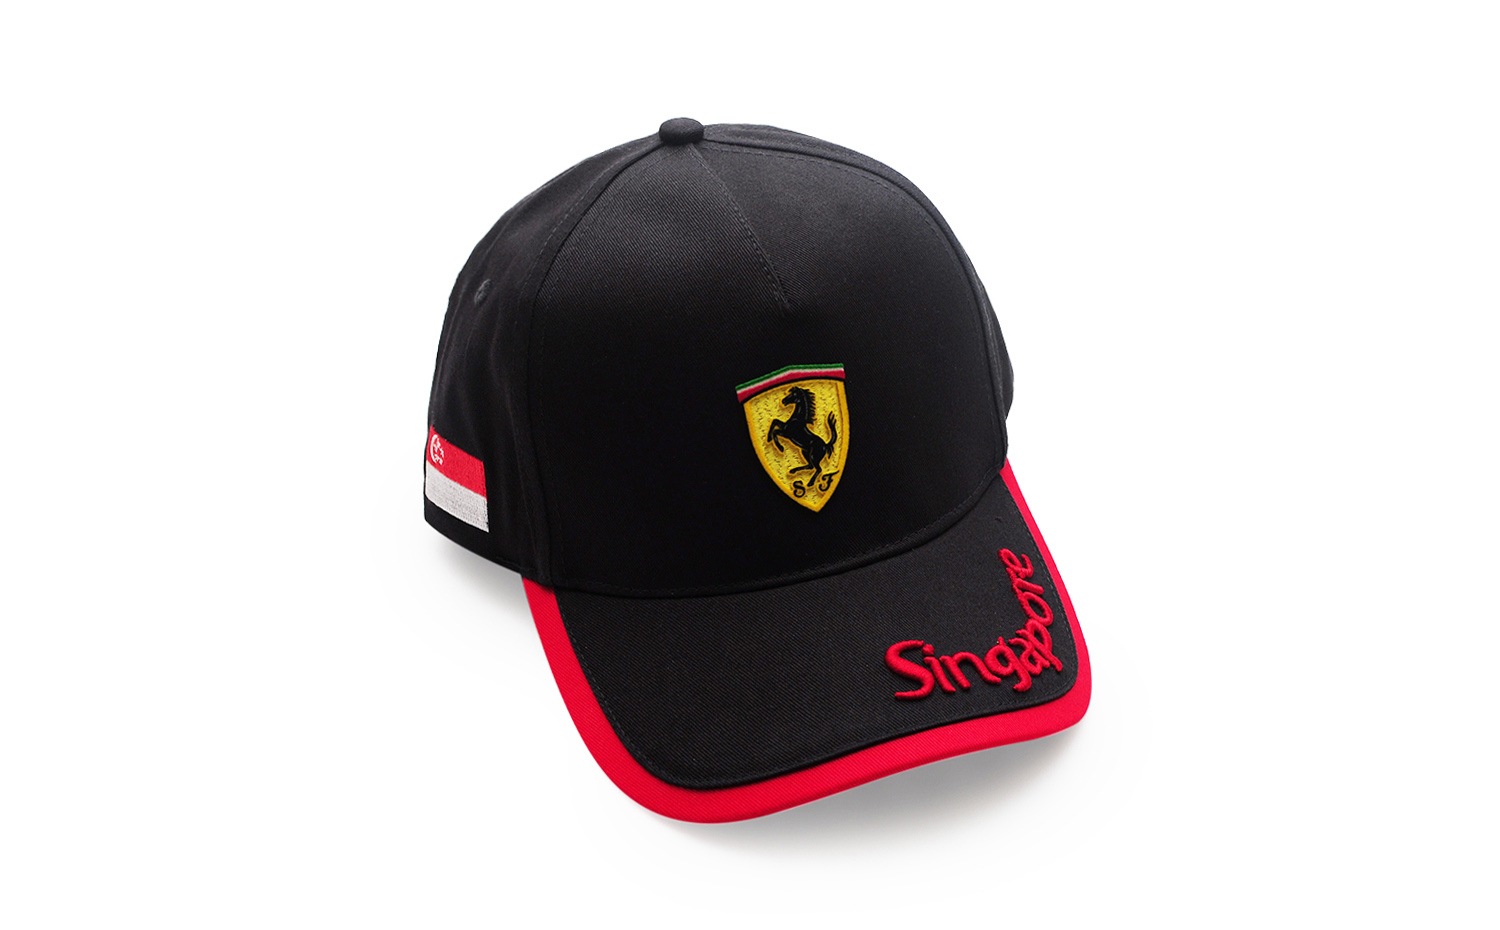 法拉利專賣店 (Ferrari Store) 新加坡城市系列黑色鴨舌帽